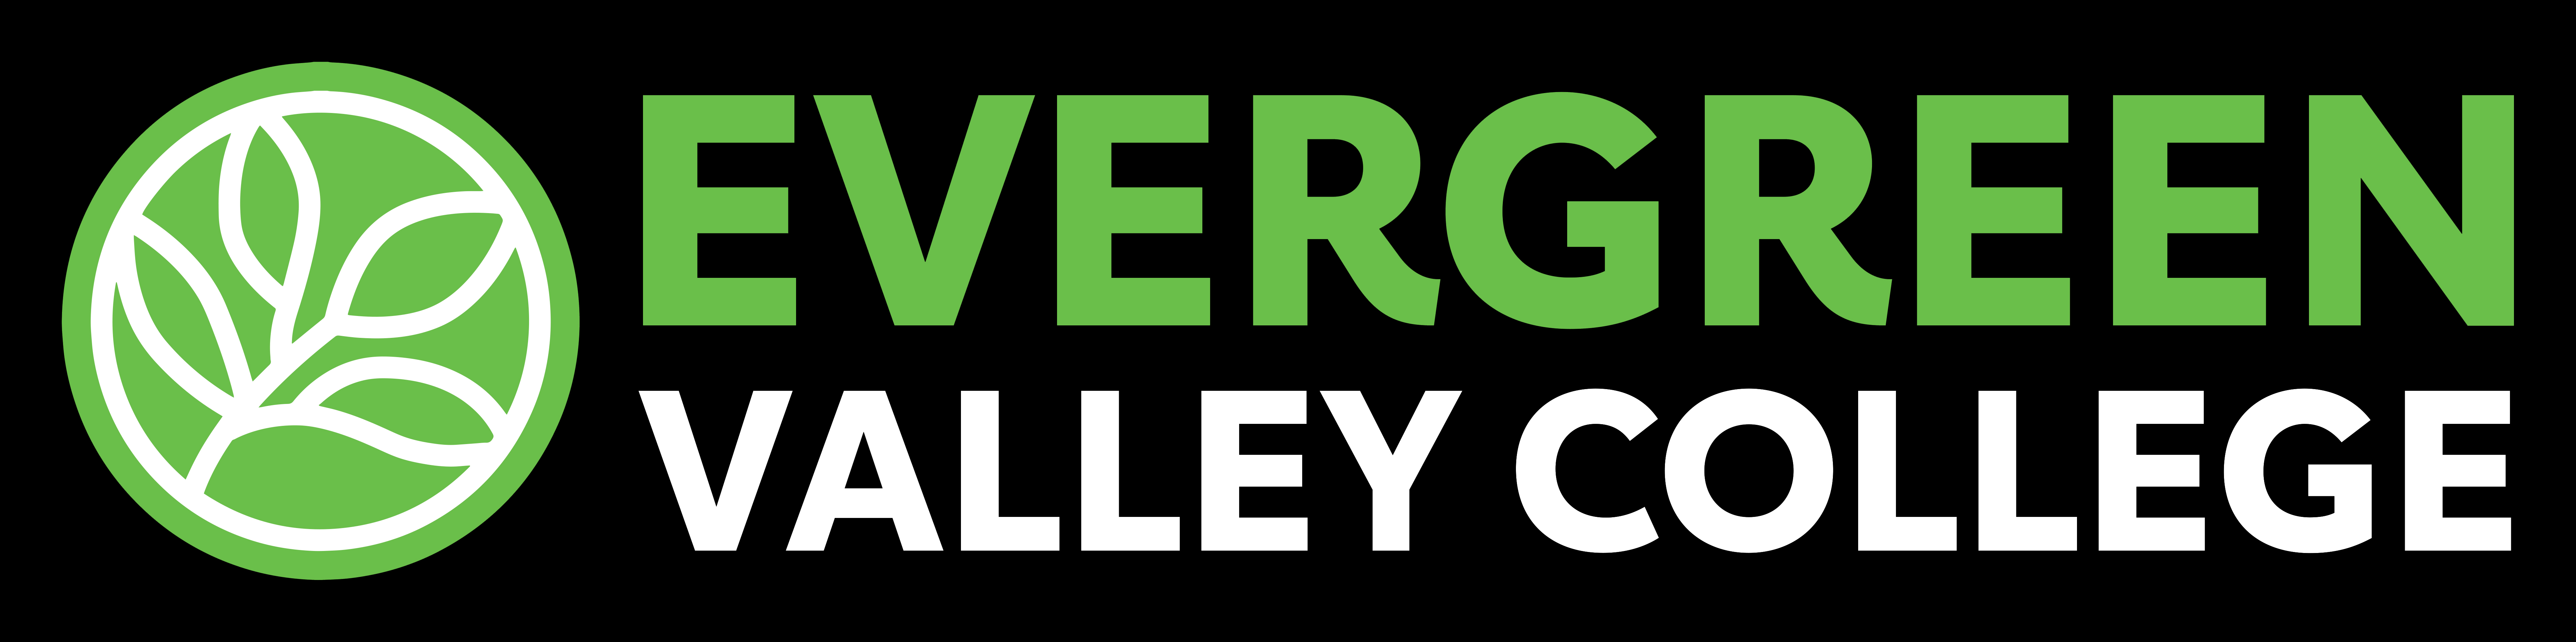 EVC Logo